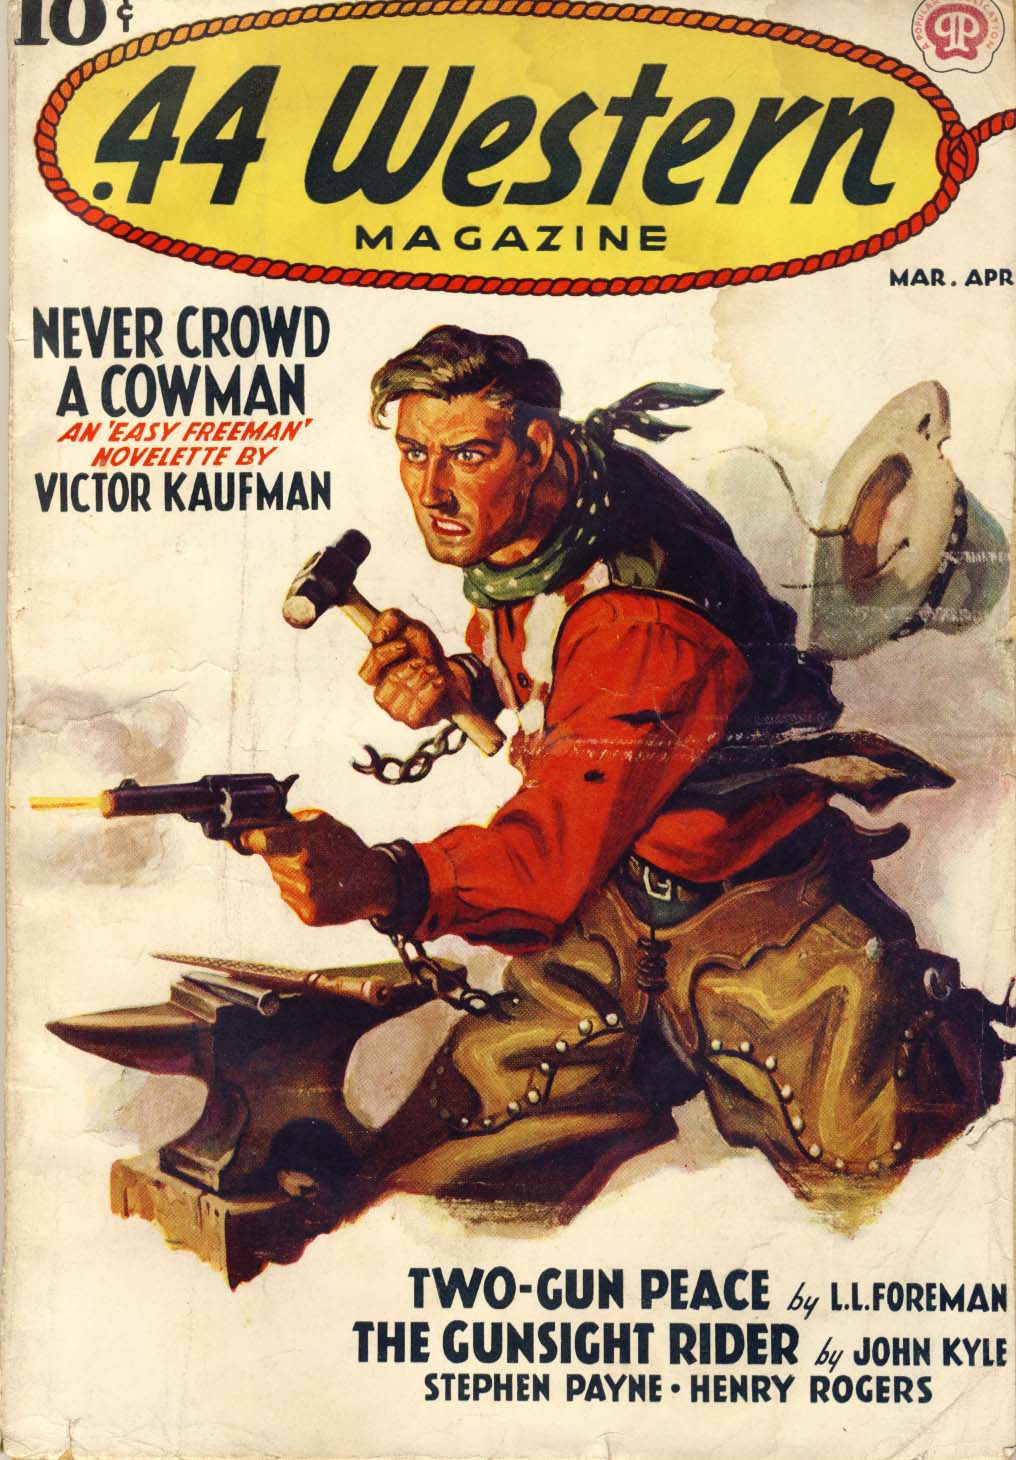 44 Western Magazine, v.2, n.3, Mar./Apr. 1938 cover